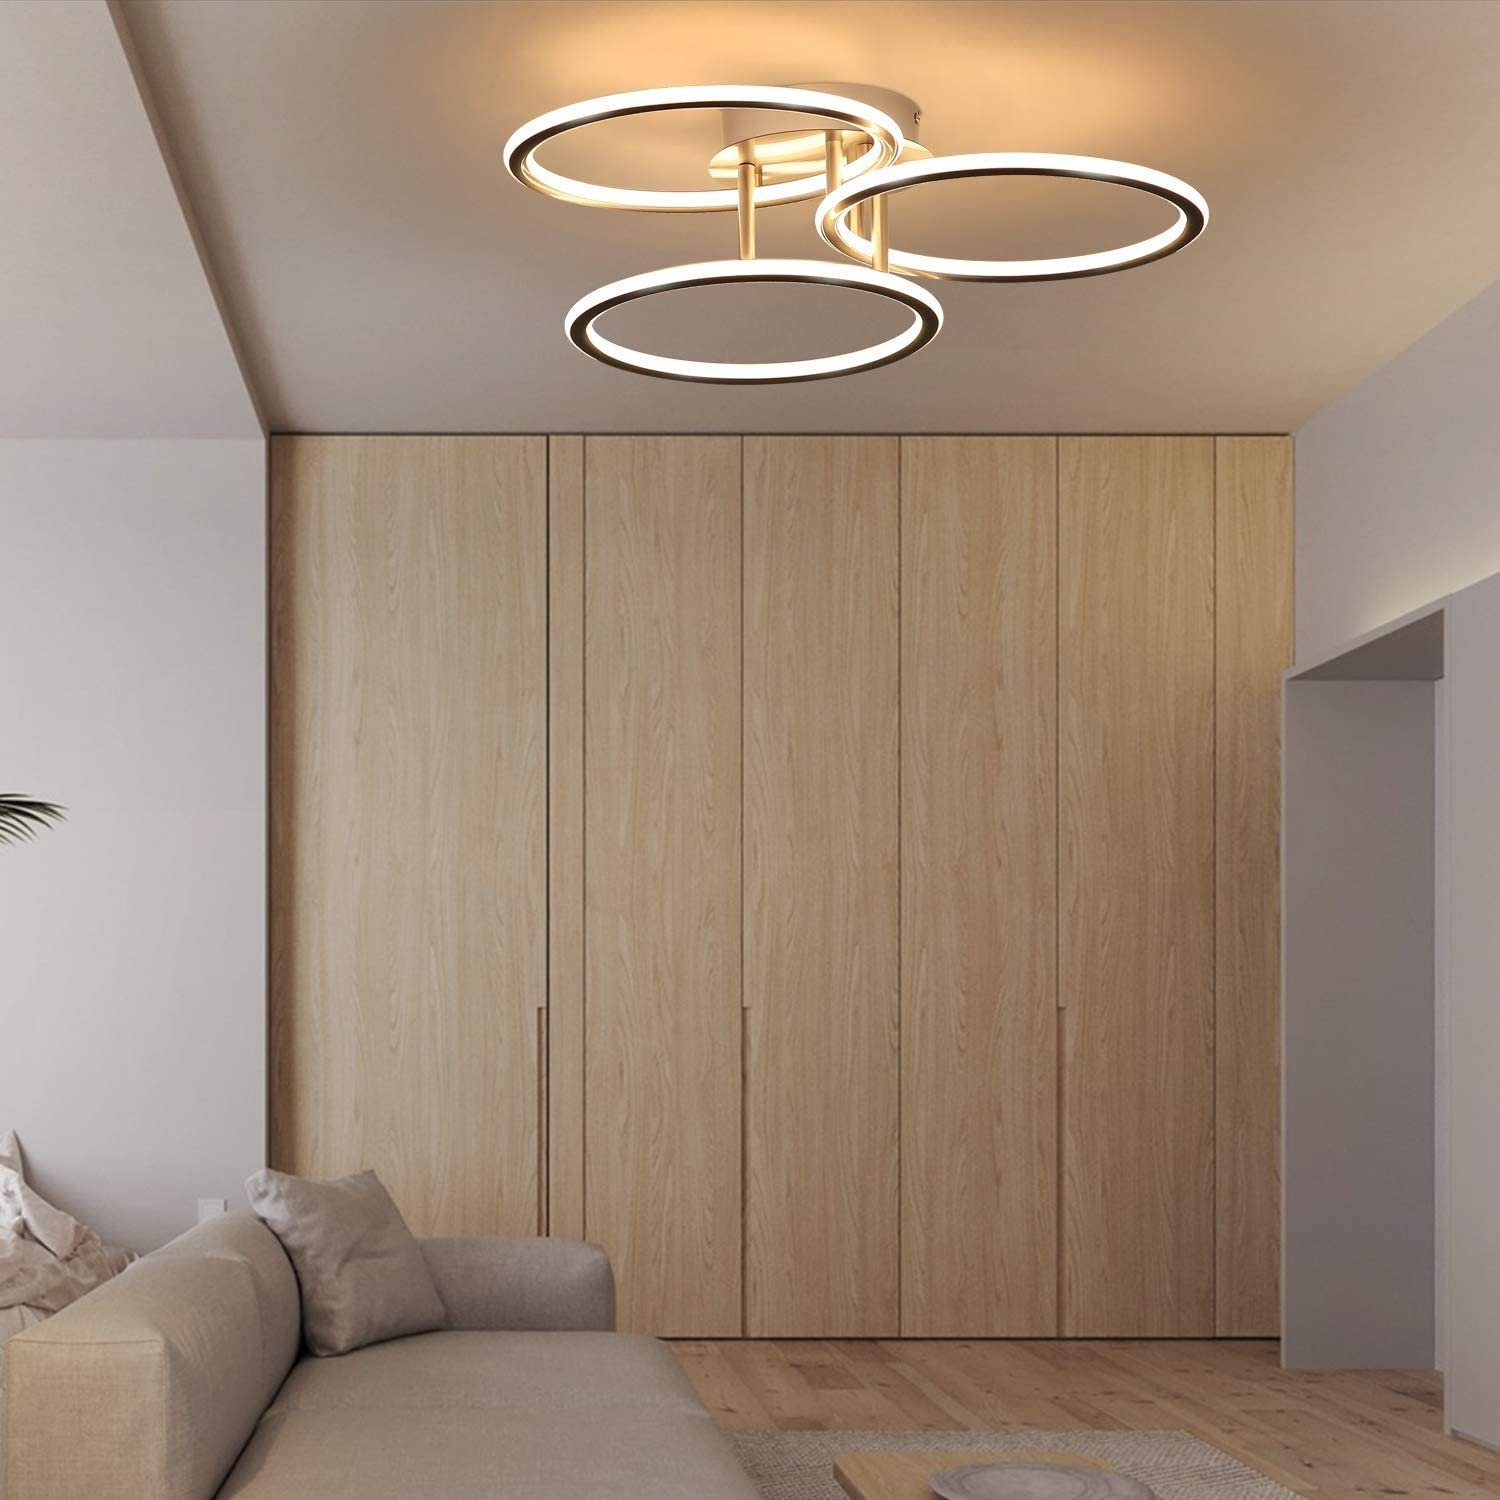 Design fest Deckenleuchte Ringe LED 3000K, LED Licht warmweiß, ZMH integriert Warmweiß Deckenleuchte